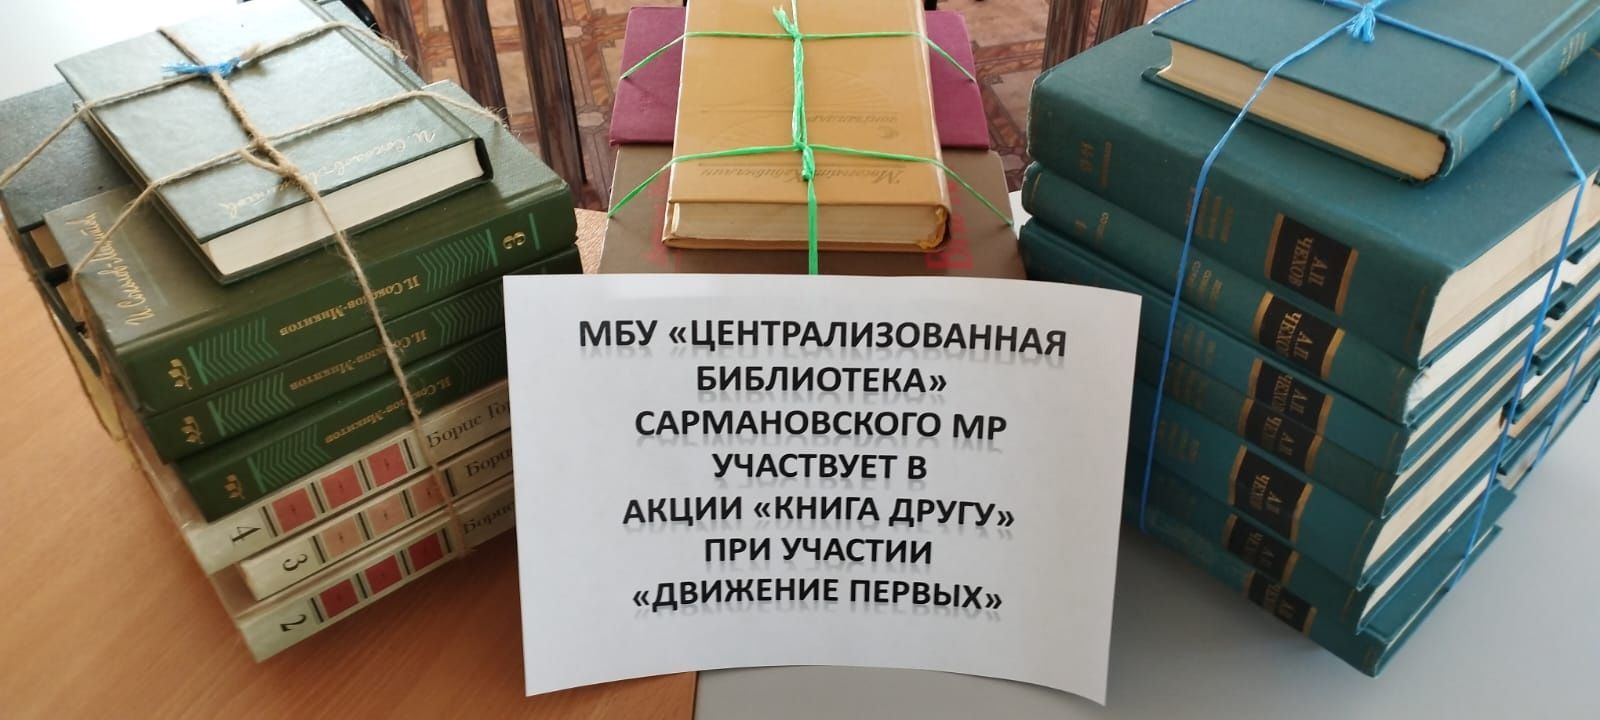 Сармановский район присоединился к акции «Книга другу»